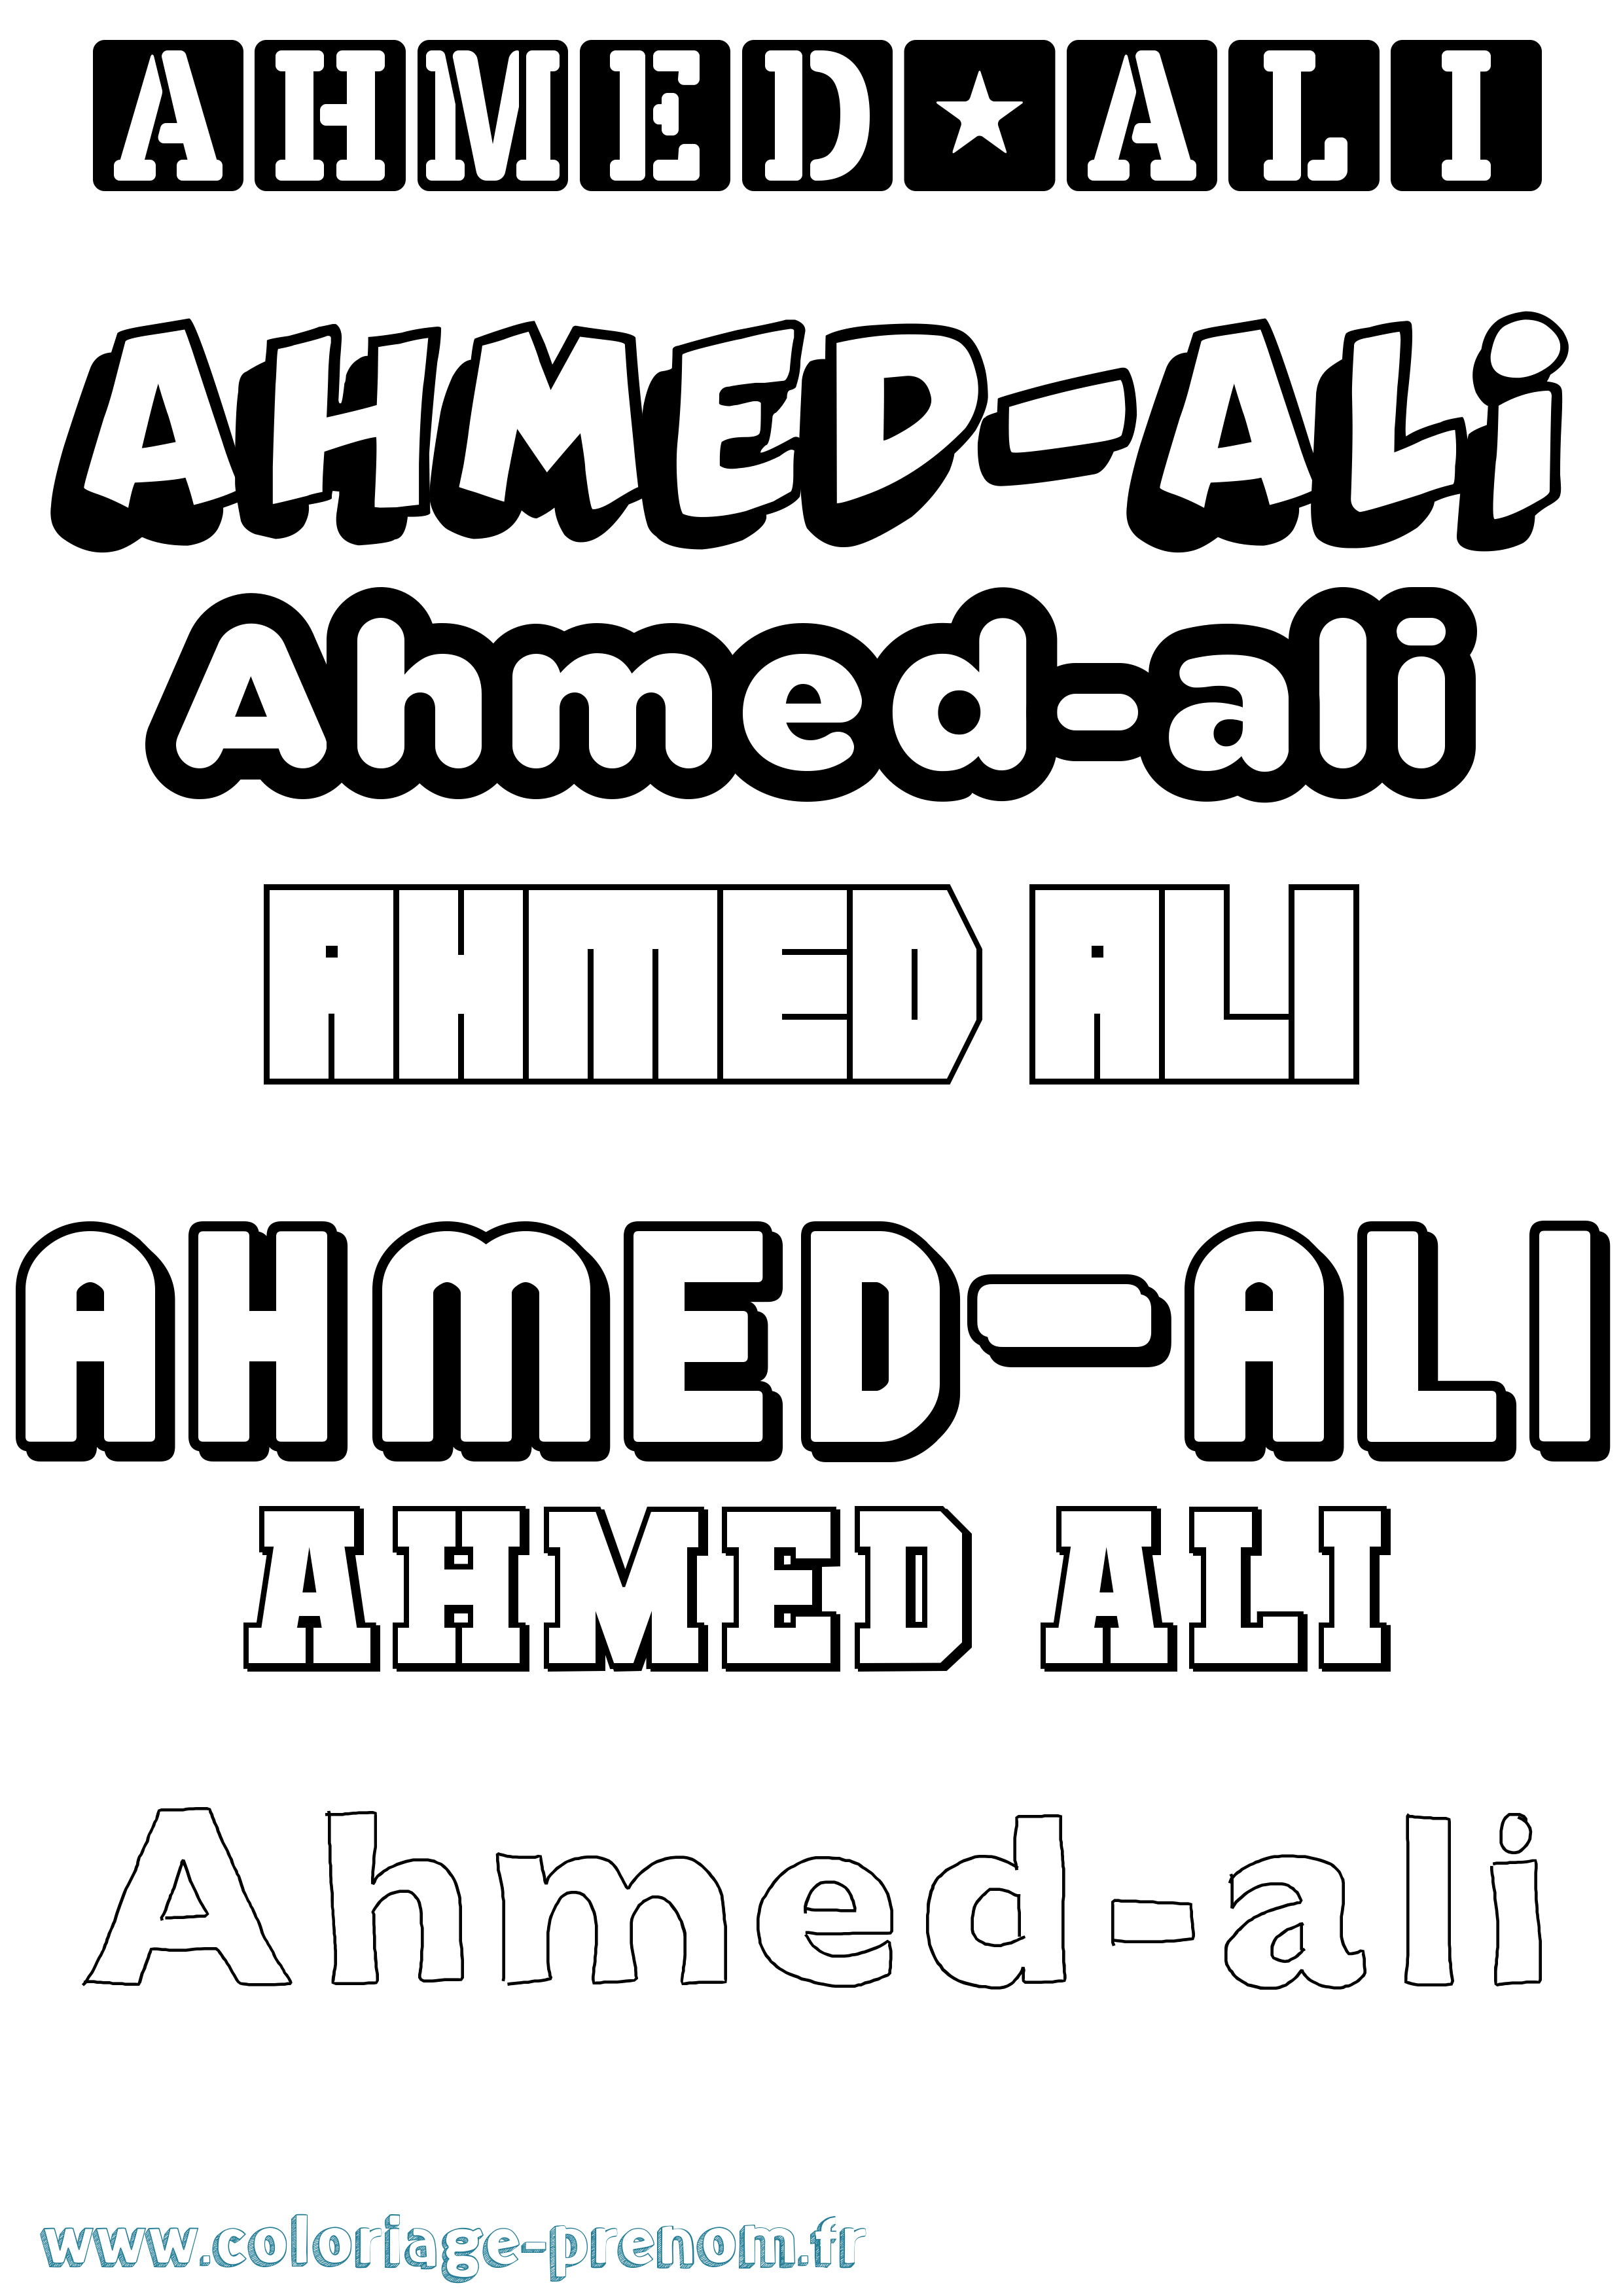 Coloriage prénom Ahmed-Ali Simple